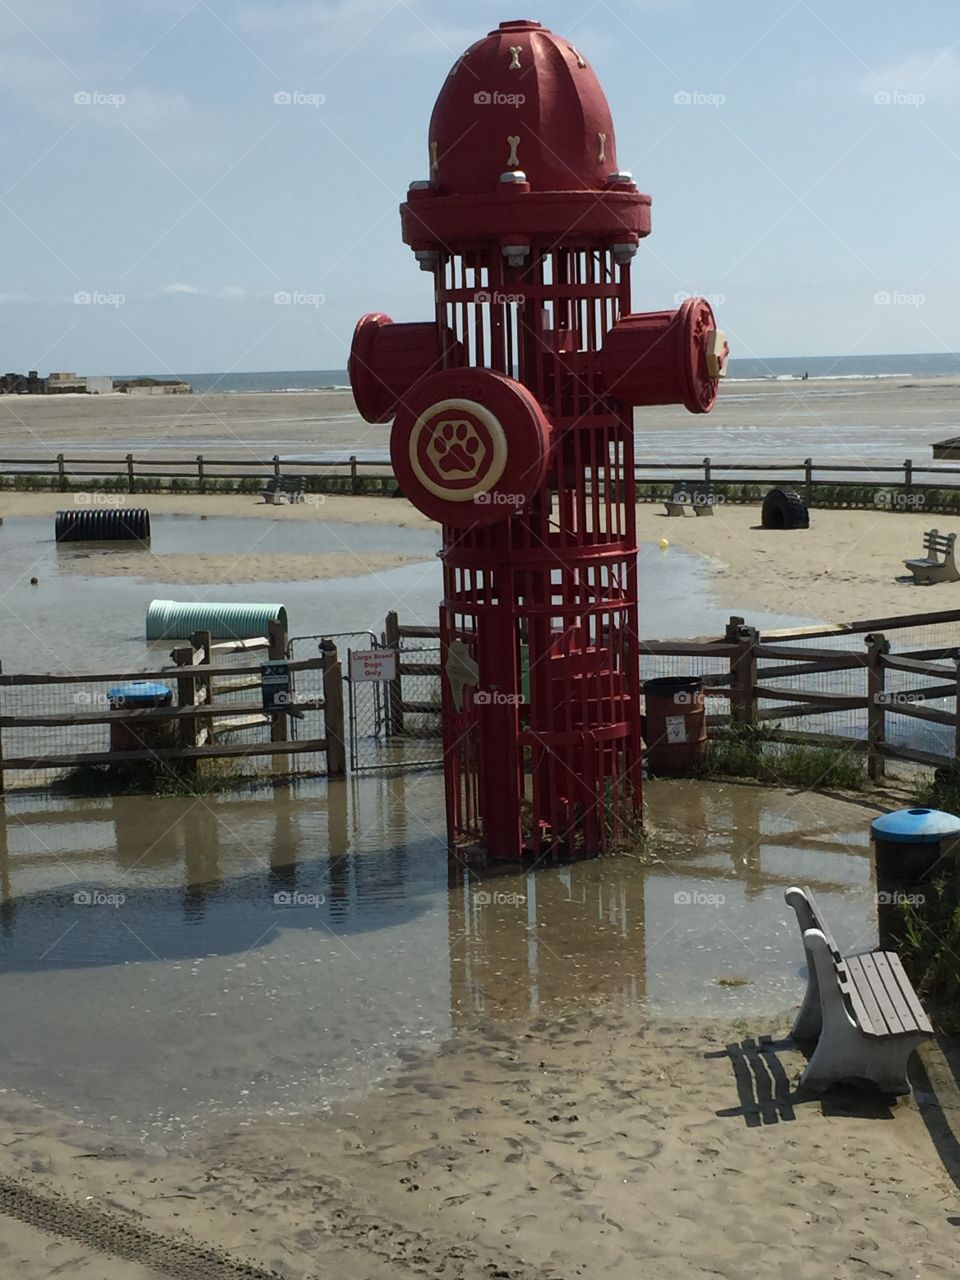 Giant fire hydrant on the beach